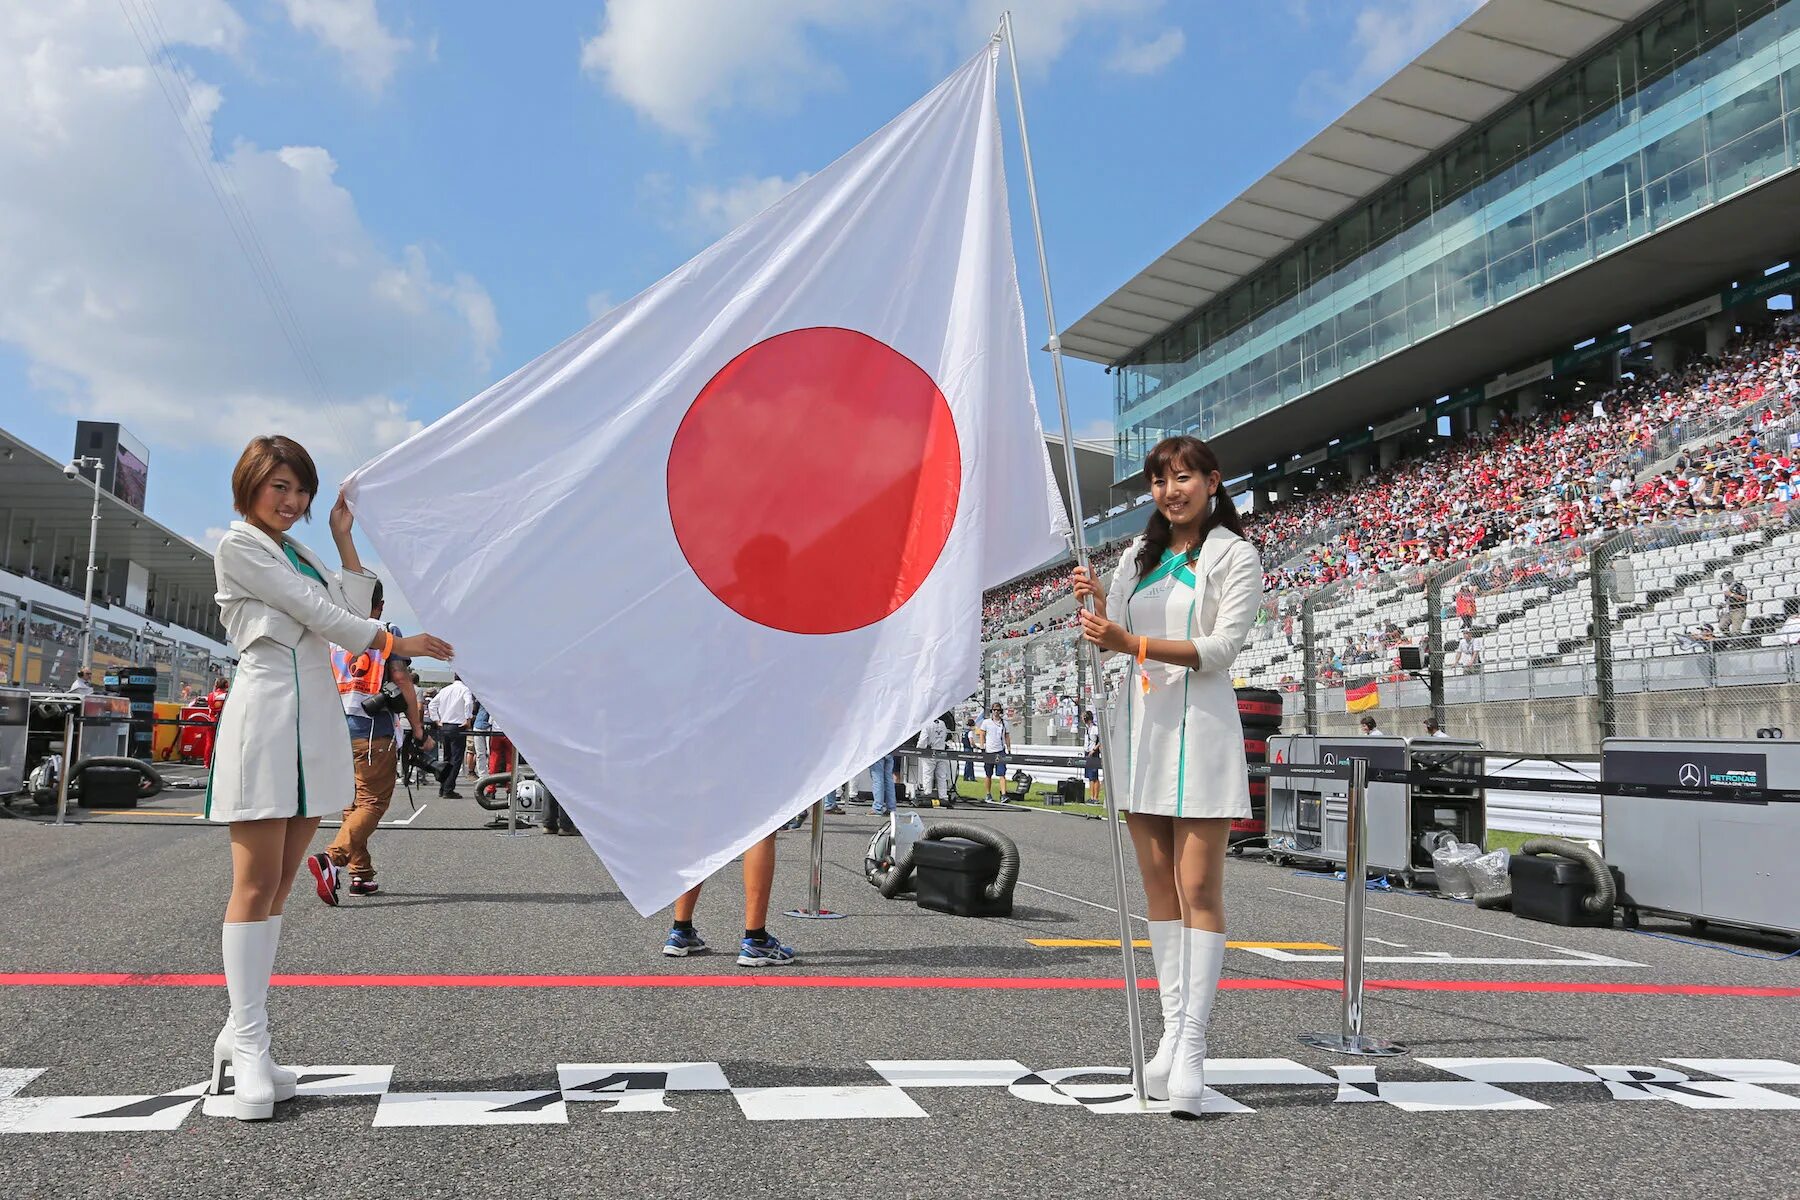 Формула 1 япония гонка. Грид герлз Япония. Ф1 Япония. Формула 1 Япония. Грид герлз на гонках в Японии.